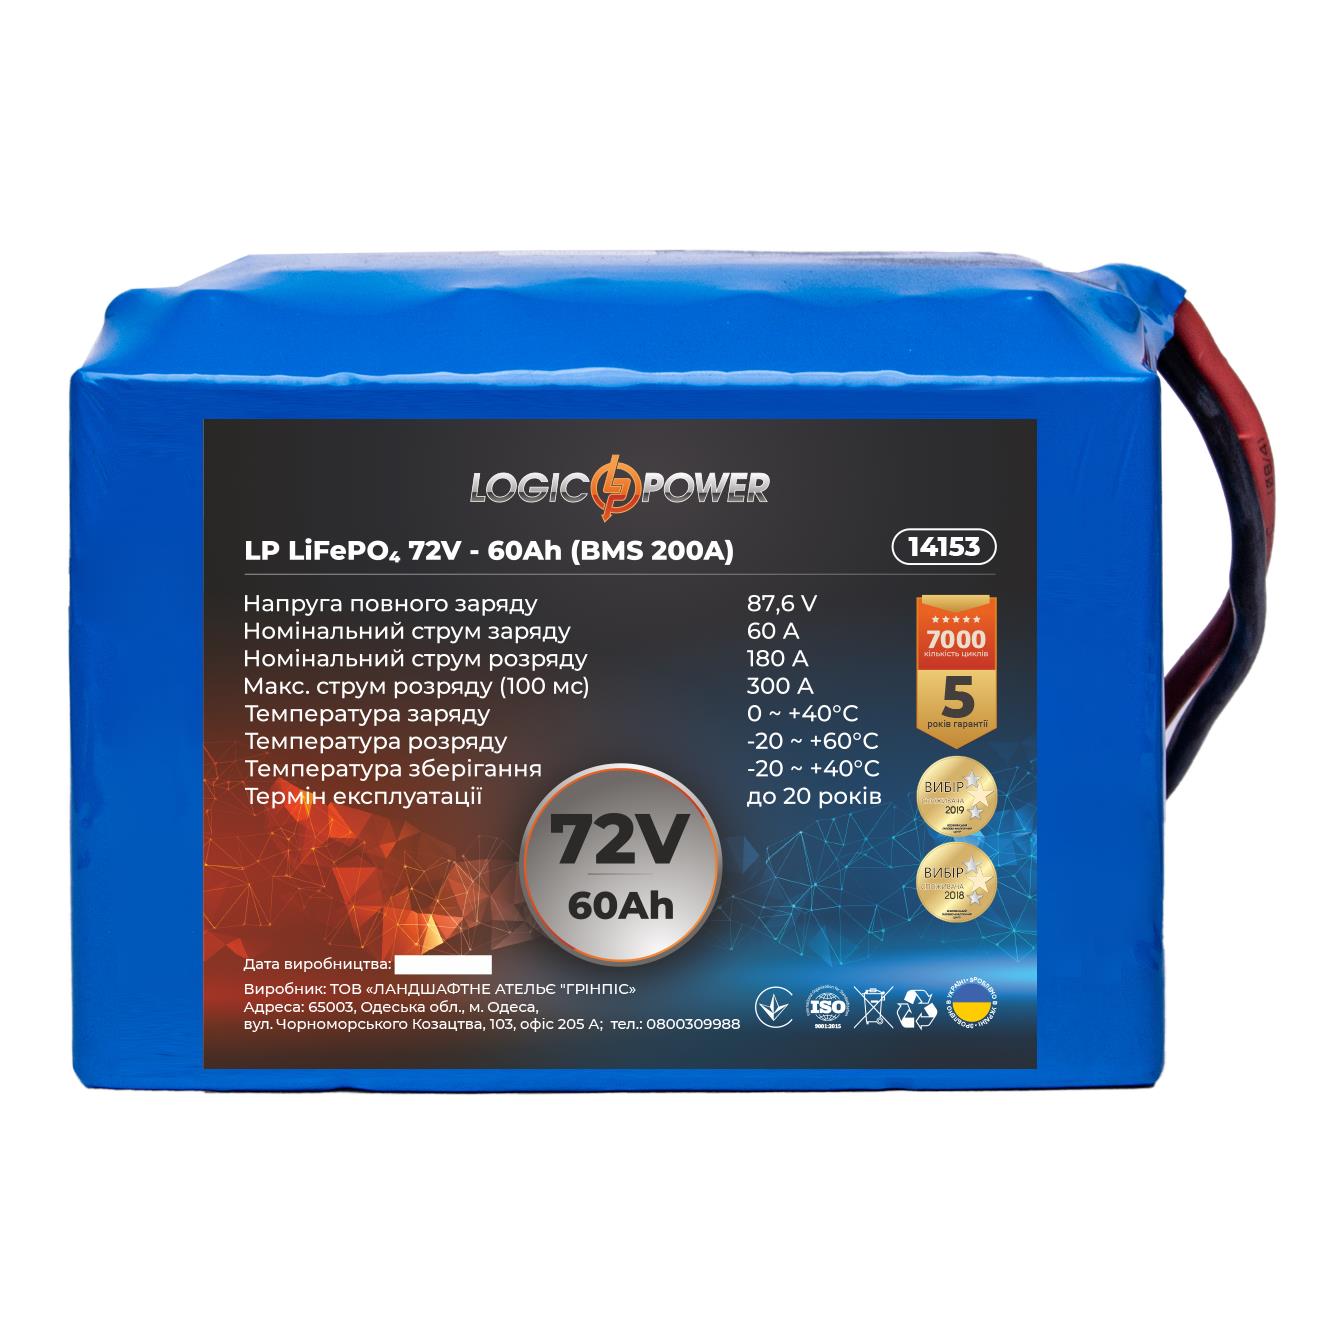 Акумулятор літій-залізо-фосфатний LogicPower LP LiFePO4 72V - 60 Ah (BMS 200A) (14153)